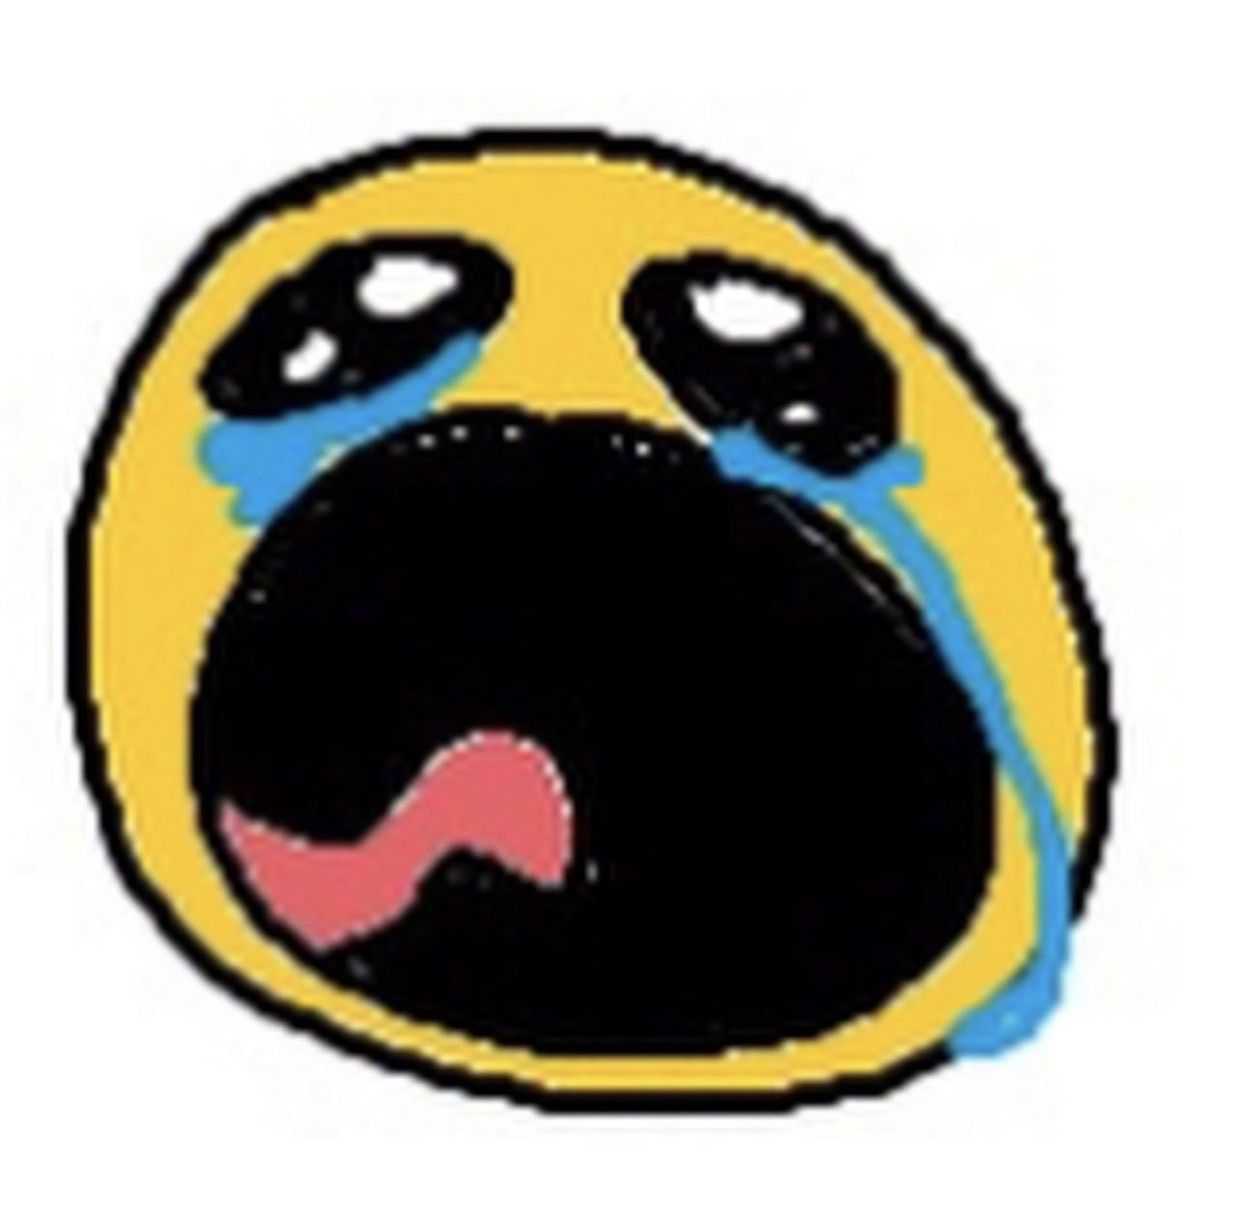 Crying Emoji Meme - IdleMeme